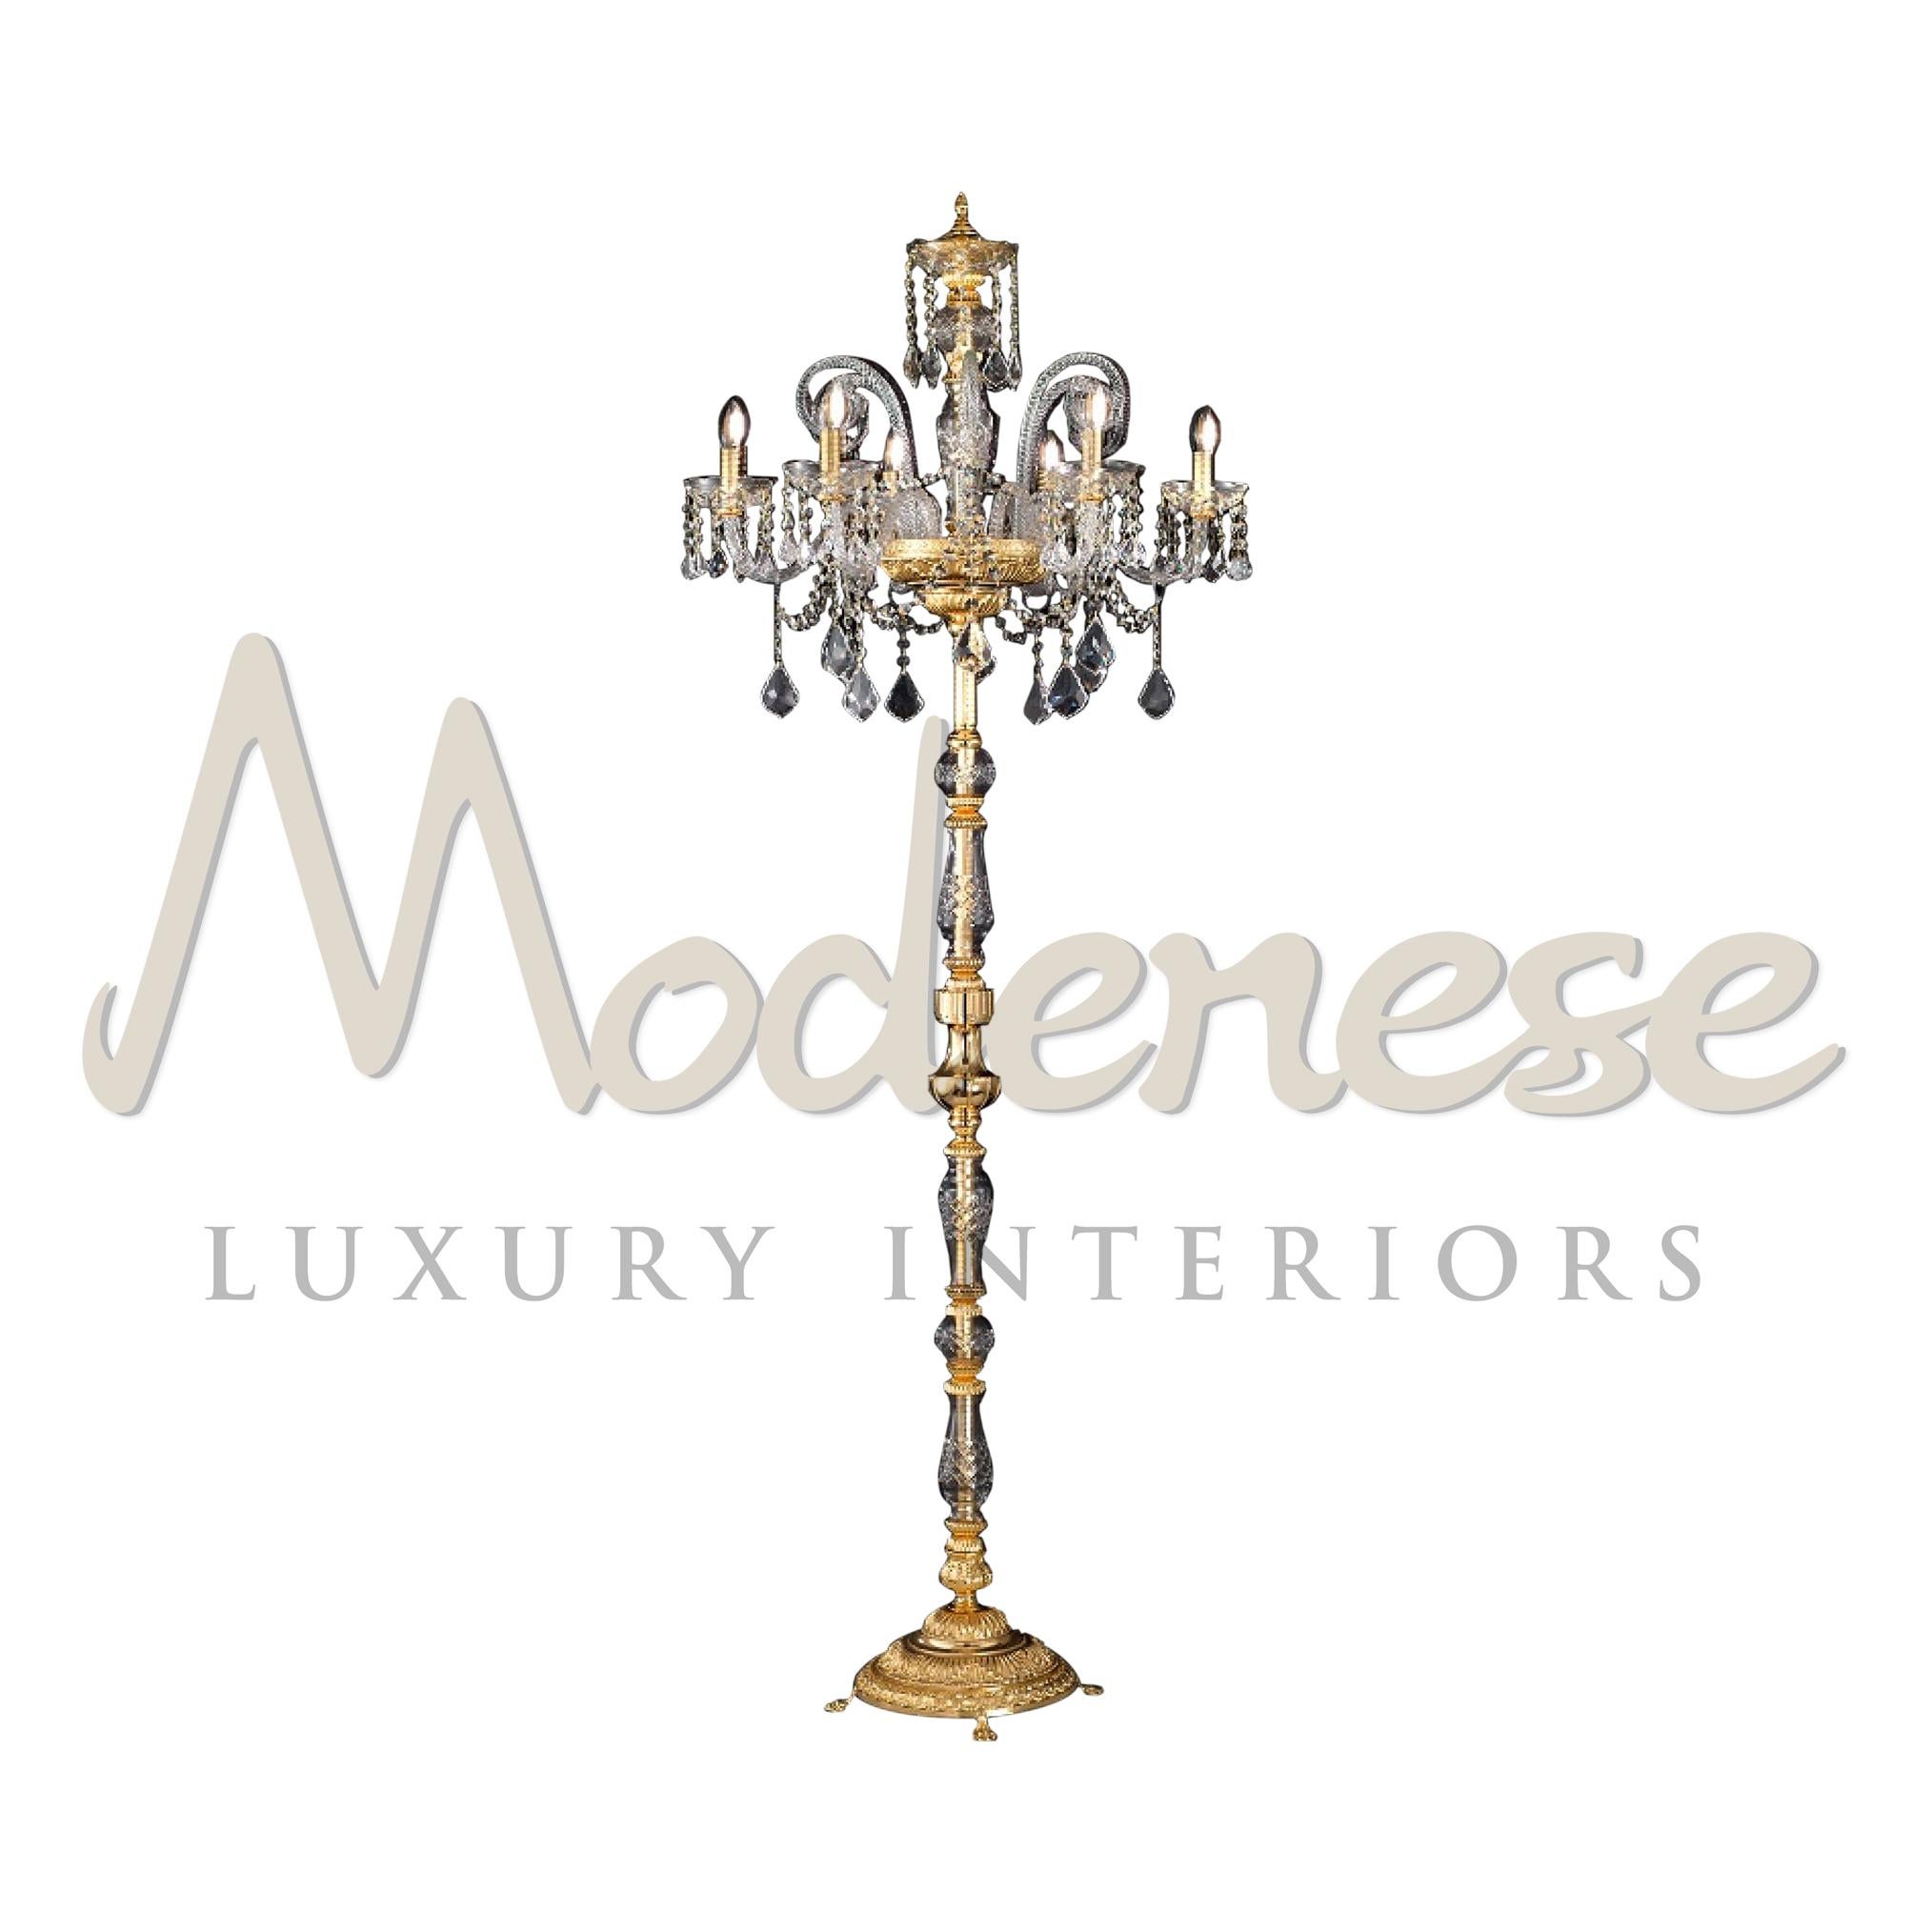 In unserem Angebot an Stehlampen finden Sie traditionelles Design und innovative Materialien, wie in diesem Modell der 6-flammigen Stehlampe mit Goldveredelung und Kristall, das von Modenese Gastone Luxury Interiors angepasst wurde. Dieses Modell